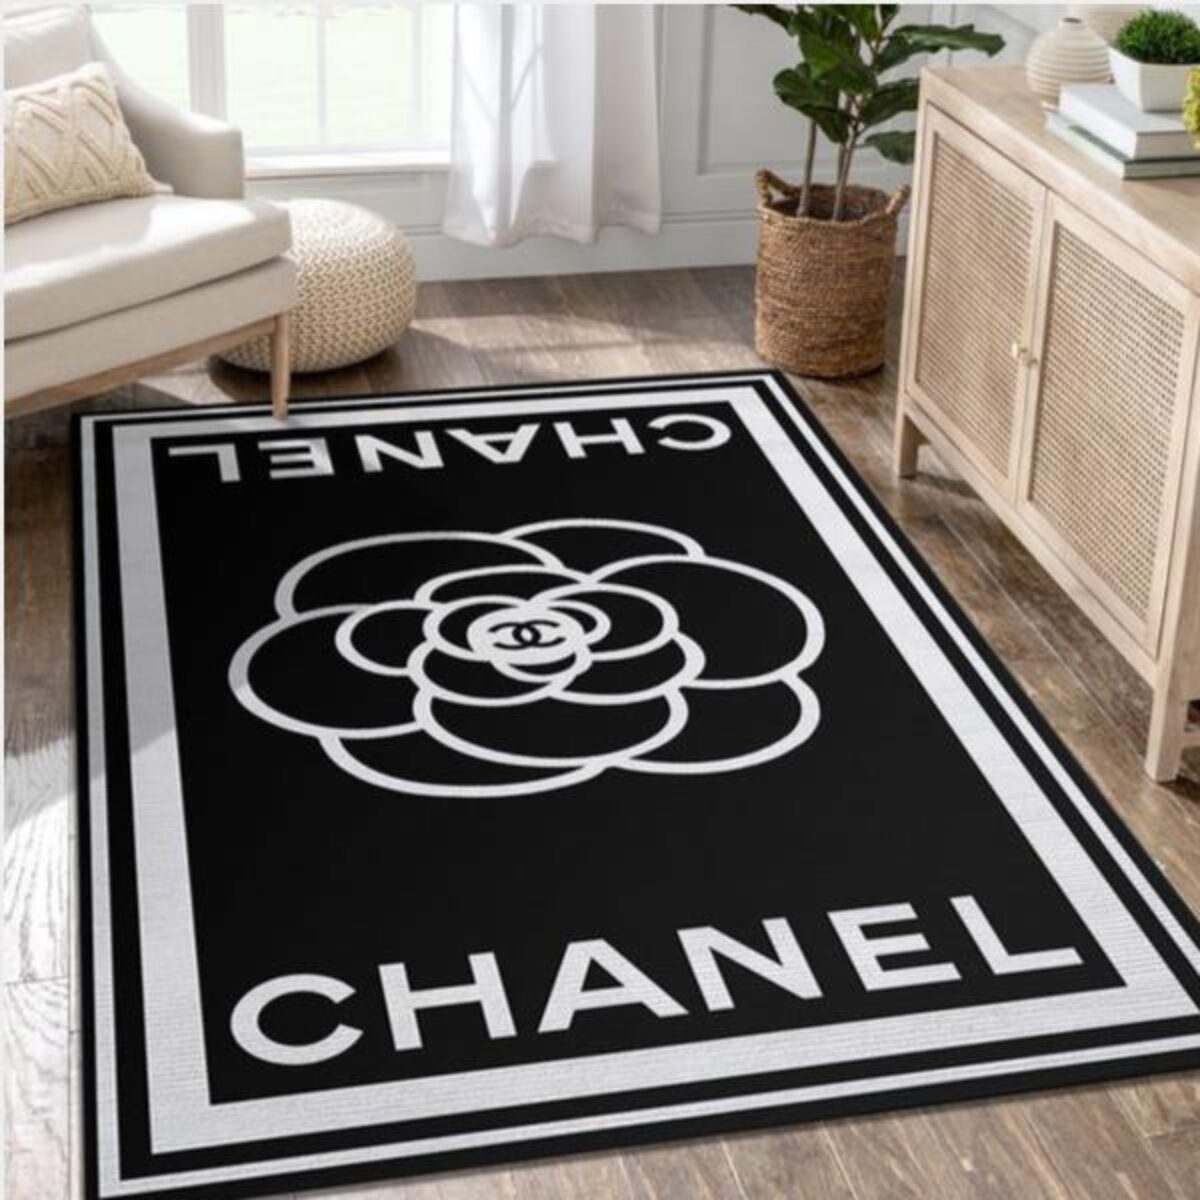 Designer Brand Coco Chanel Black And White Area Rug  カーペット 可愛い, シャネル, シャネル  ノベルティ